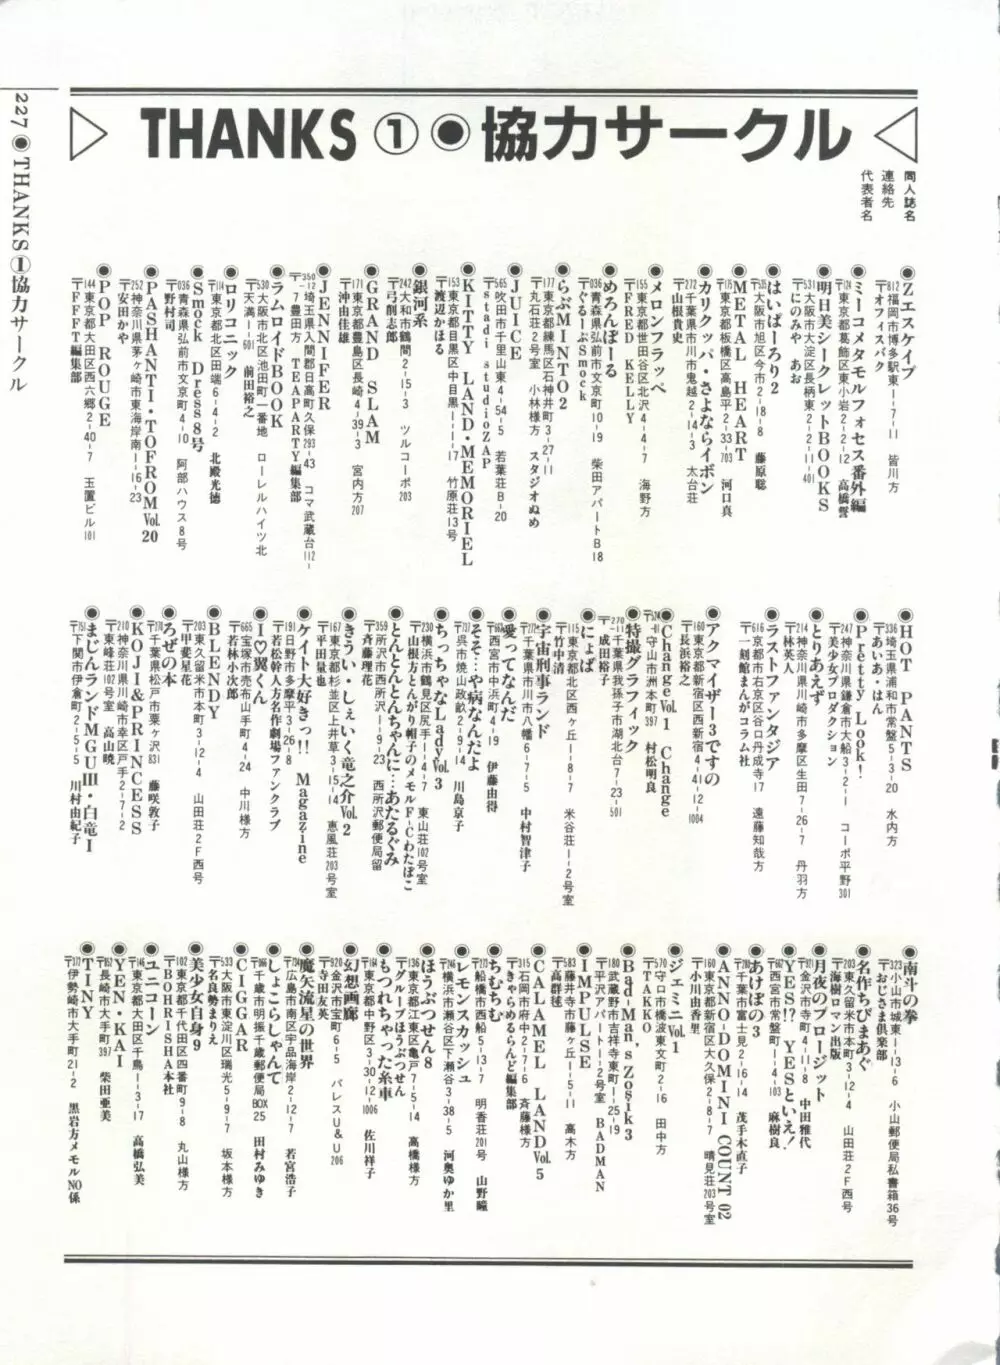 [Anthology] 美少女症候群(2) Lolita syndrome (よろず) 230ページ